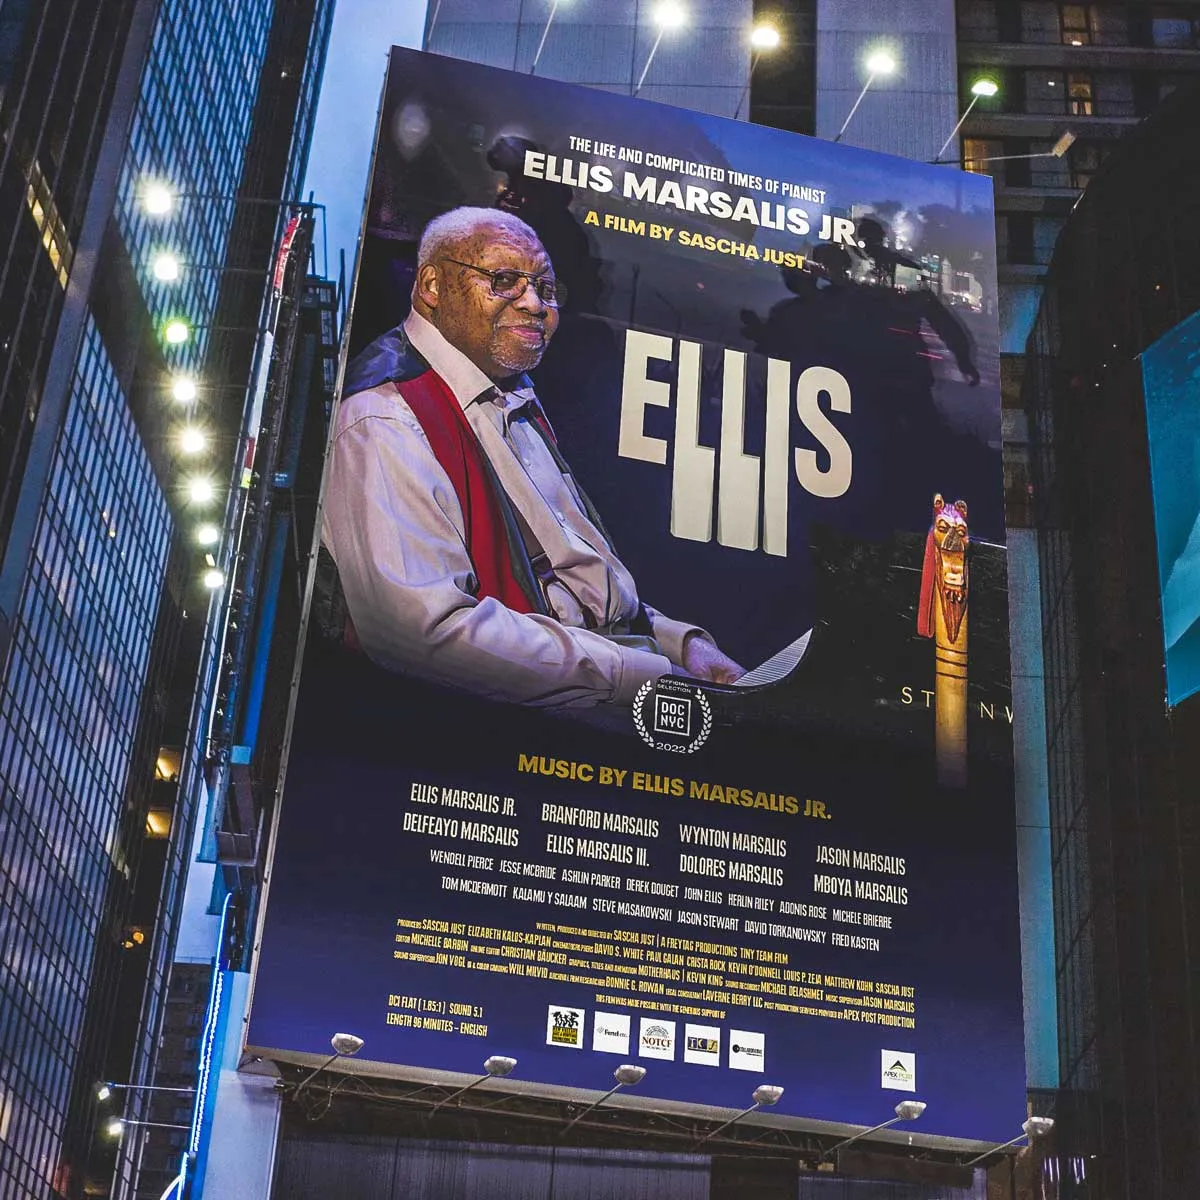 Ellis Marsalis documentary makes New Orleans premiere this week